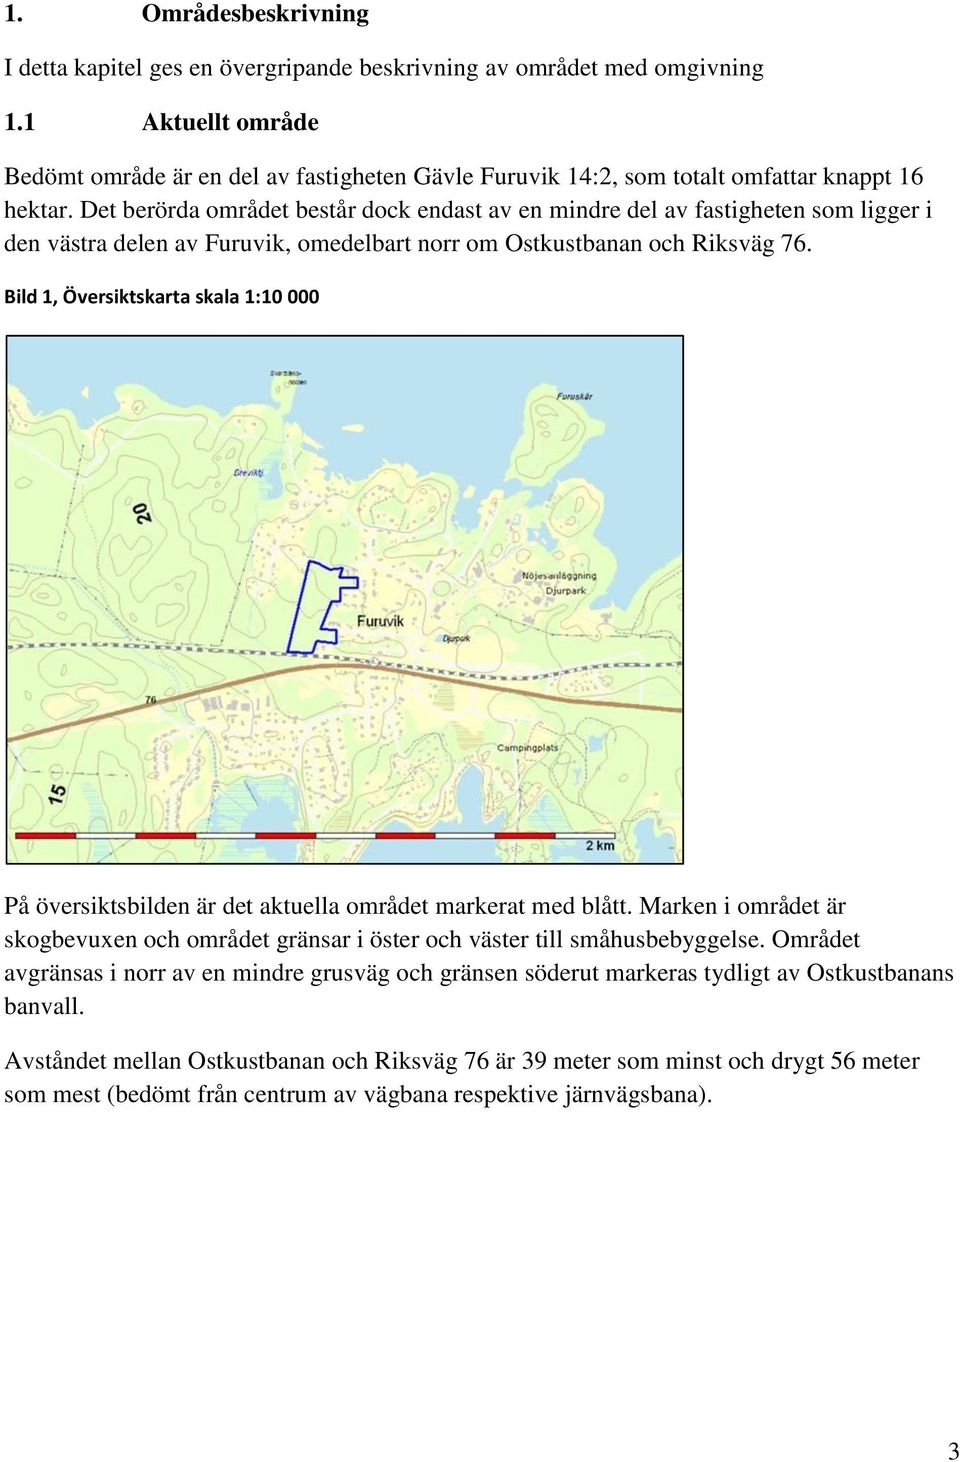 Det berörda området består dock endast av en mindre del av fastigheten som ligger i den västra delen av Furuvik, omedelbart norr om Ostkustbanan och Riksväg 76.